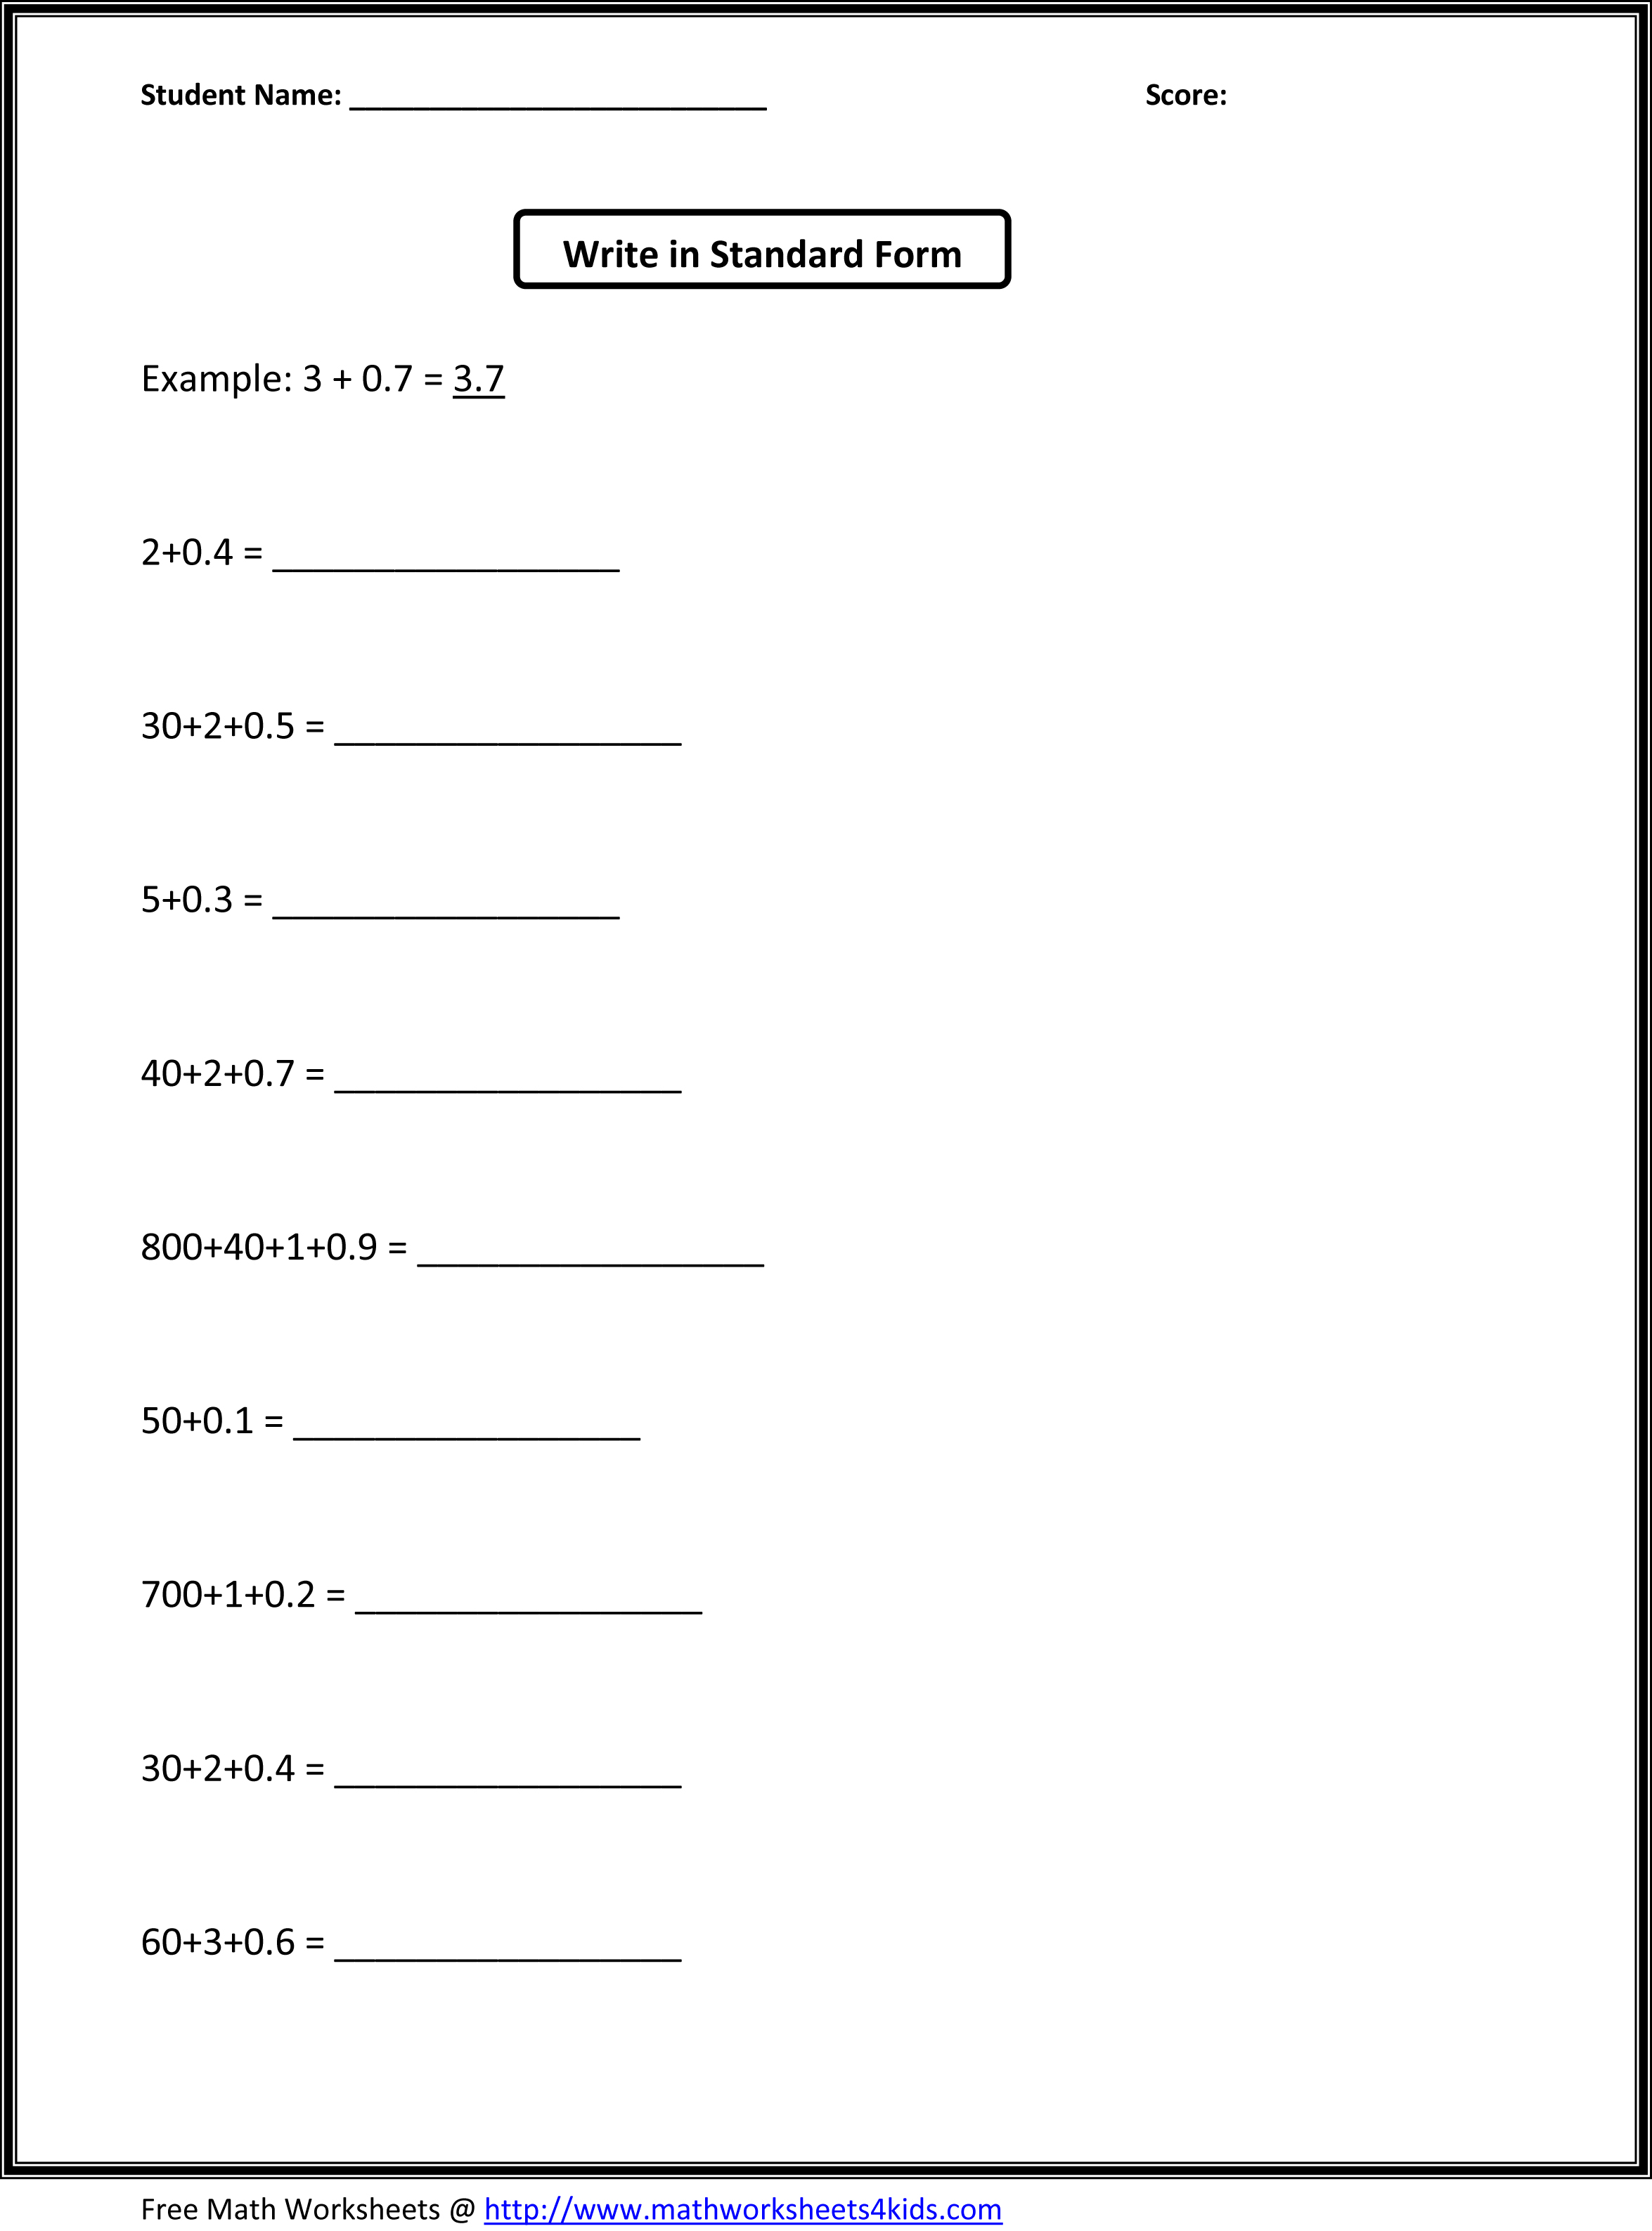 3rd Grade Math Worksheets Decimals